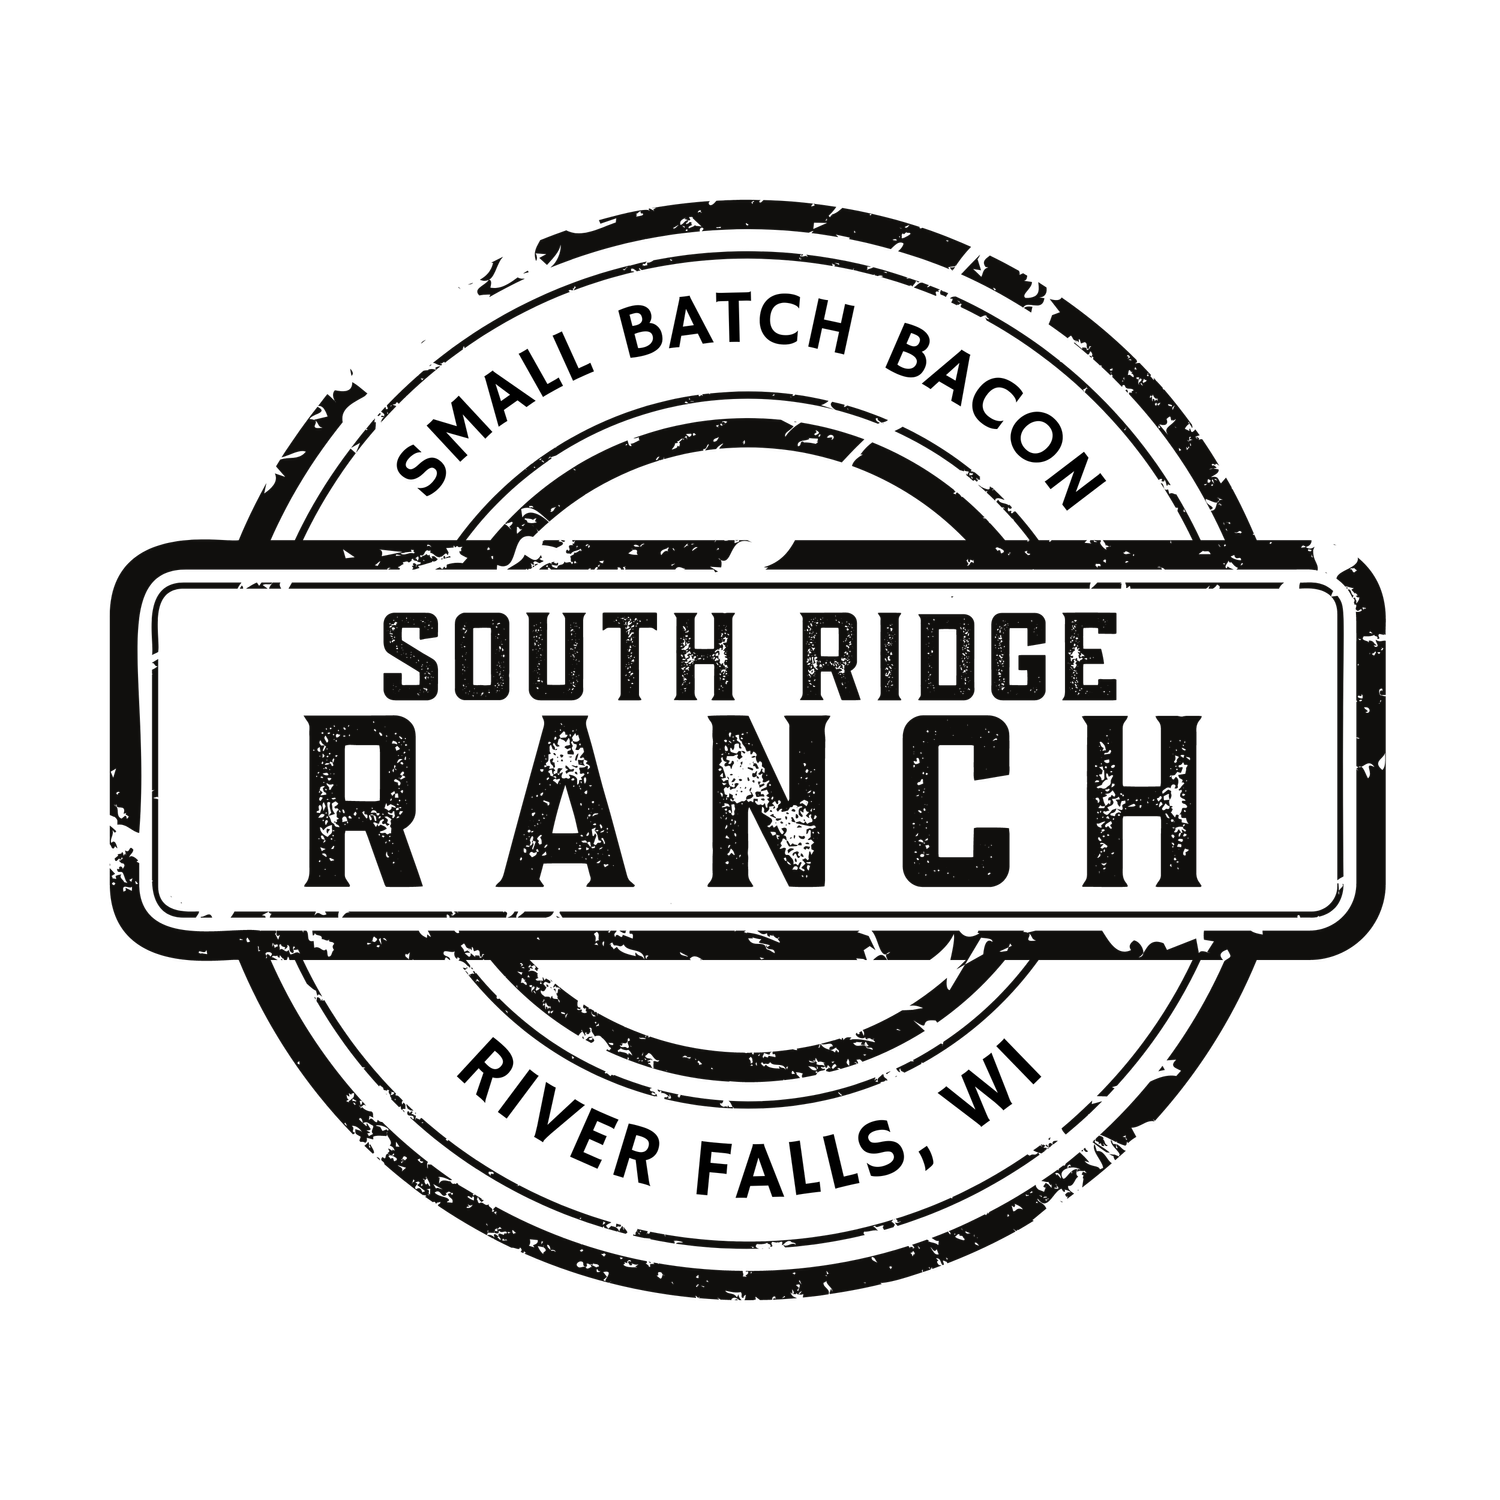 South Ridge Ranch